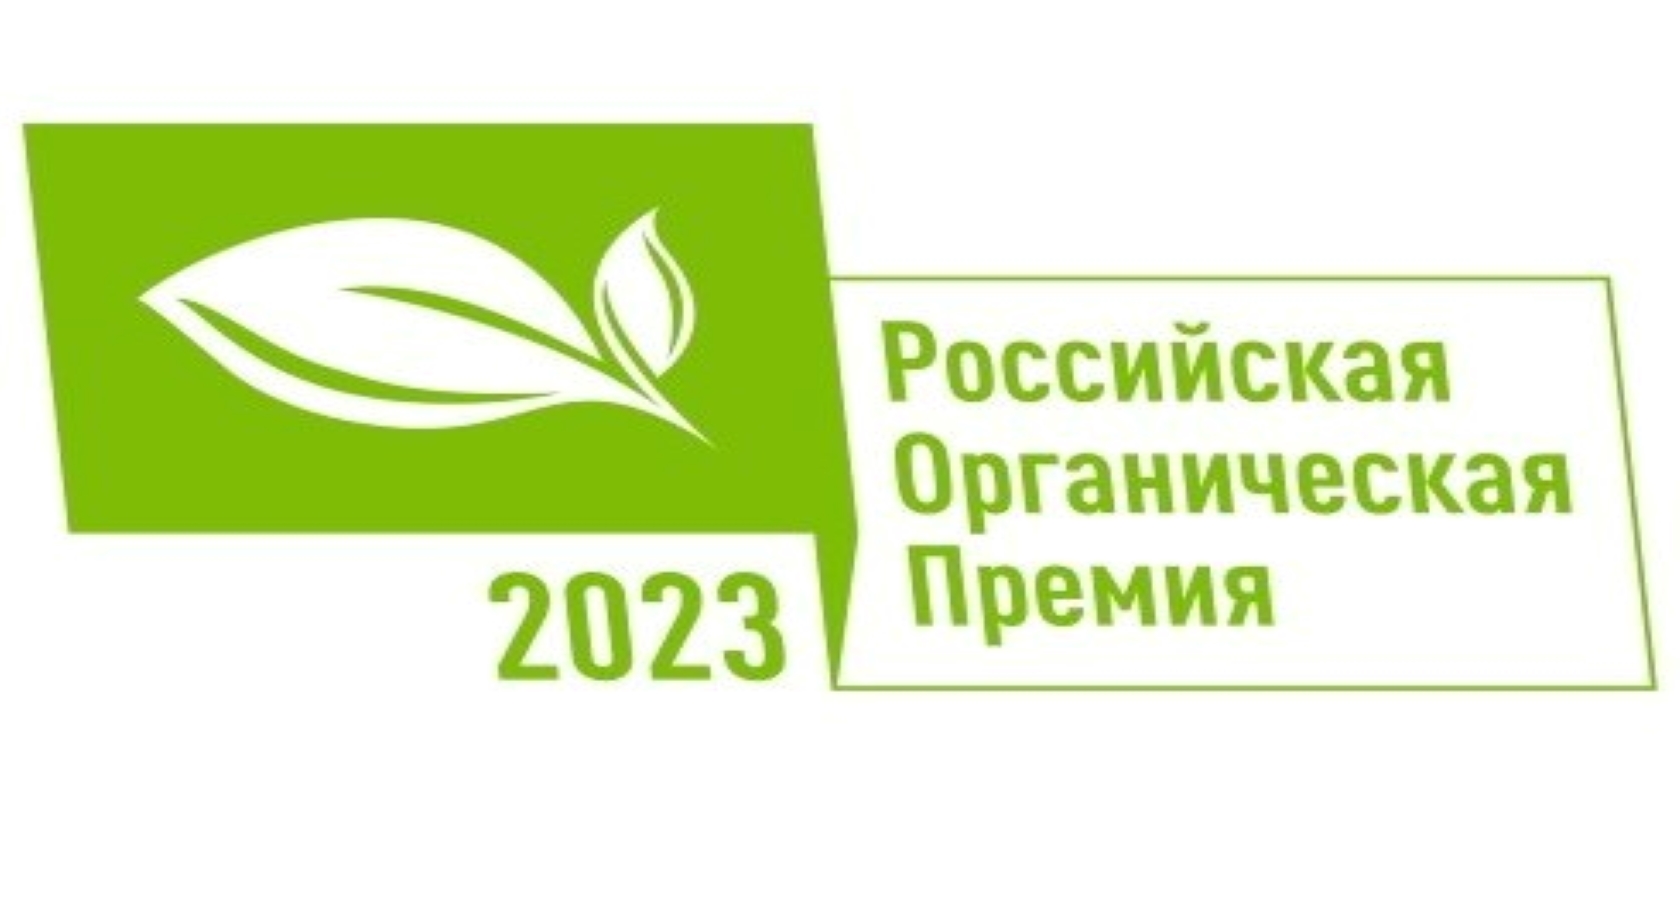 Более 140 заявок из 23 регионов страны поступило на Национальный органический конкурс